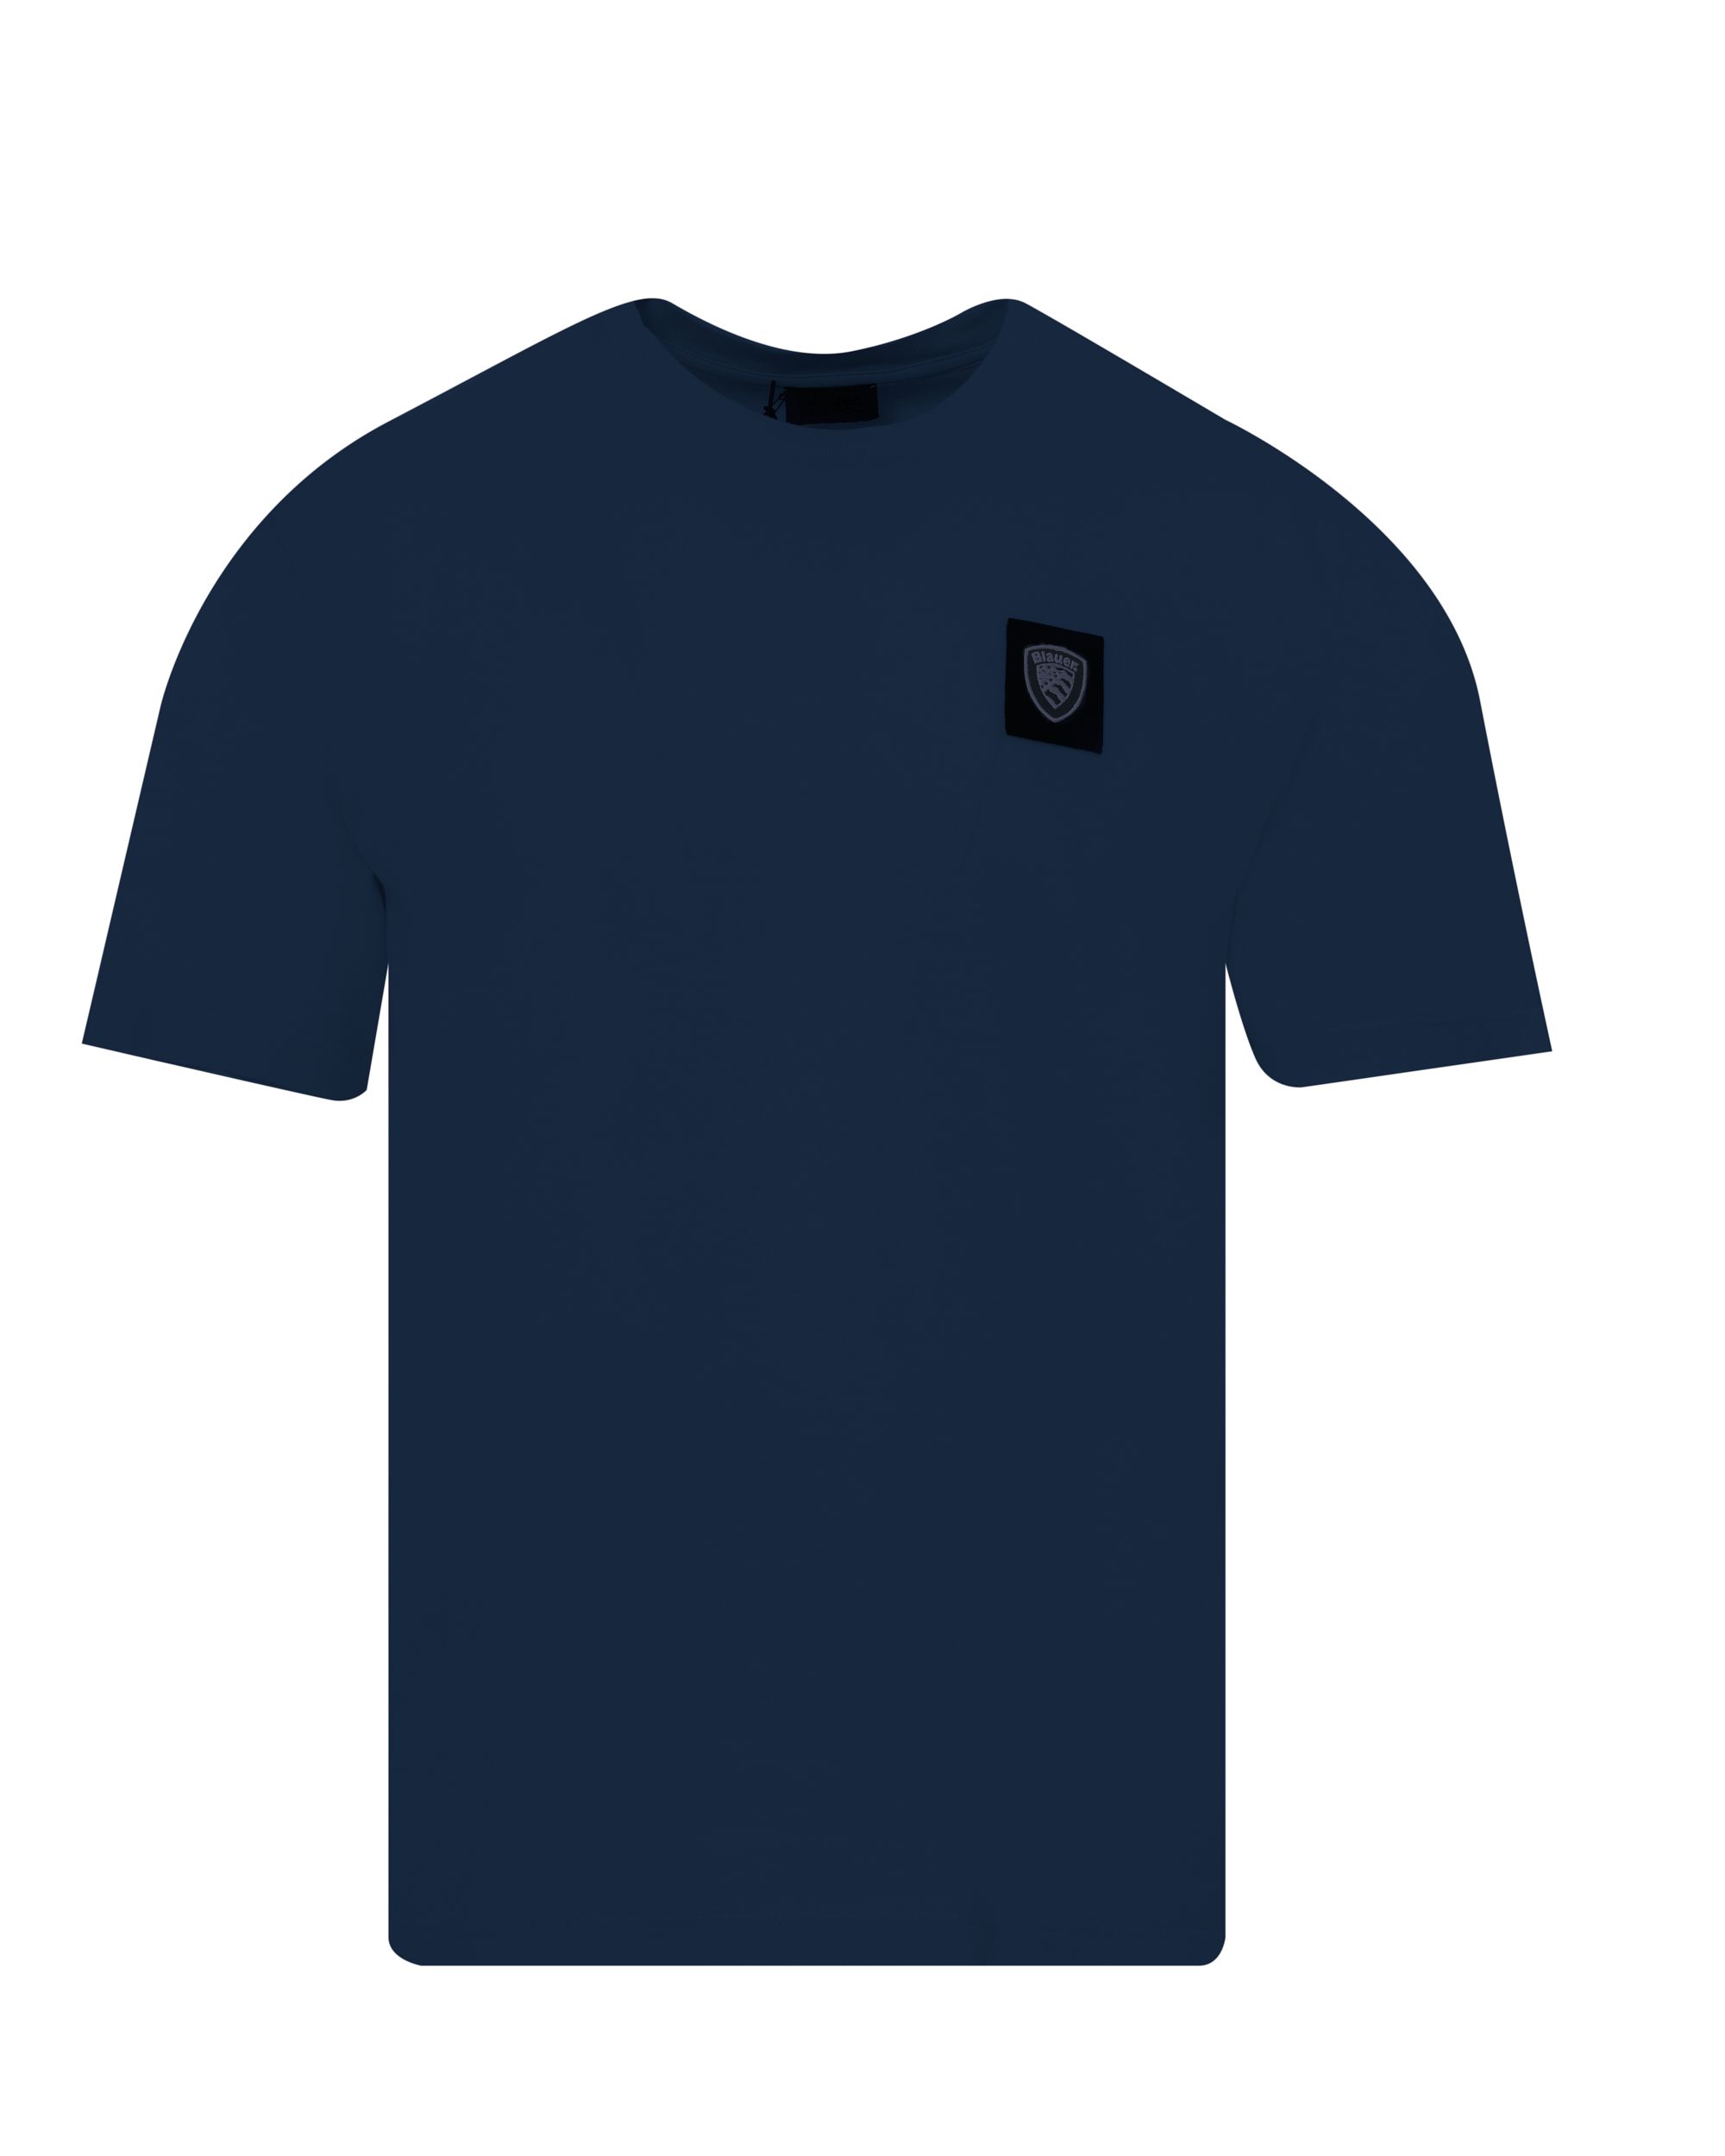 Blauer T-shirt KM Donker blauw 083194-001-L